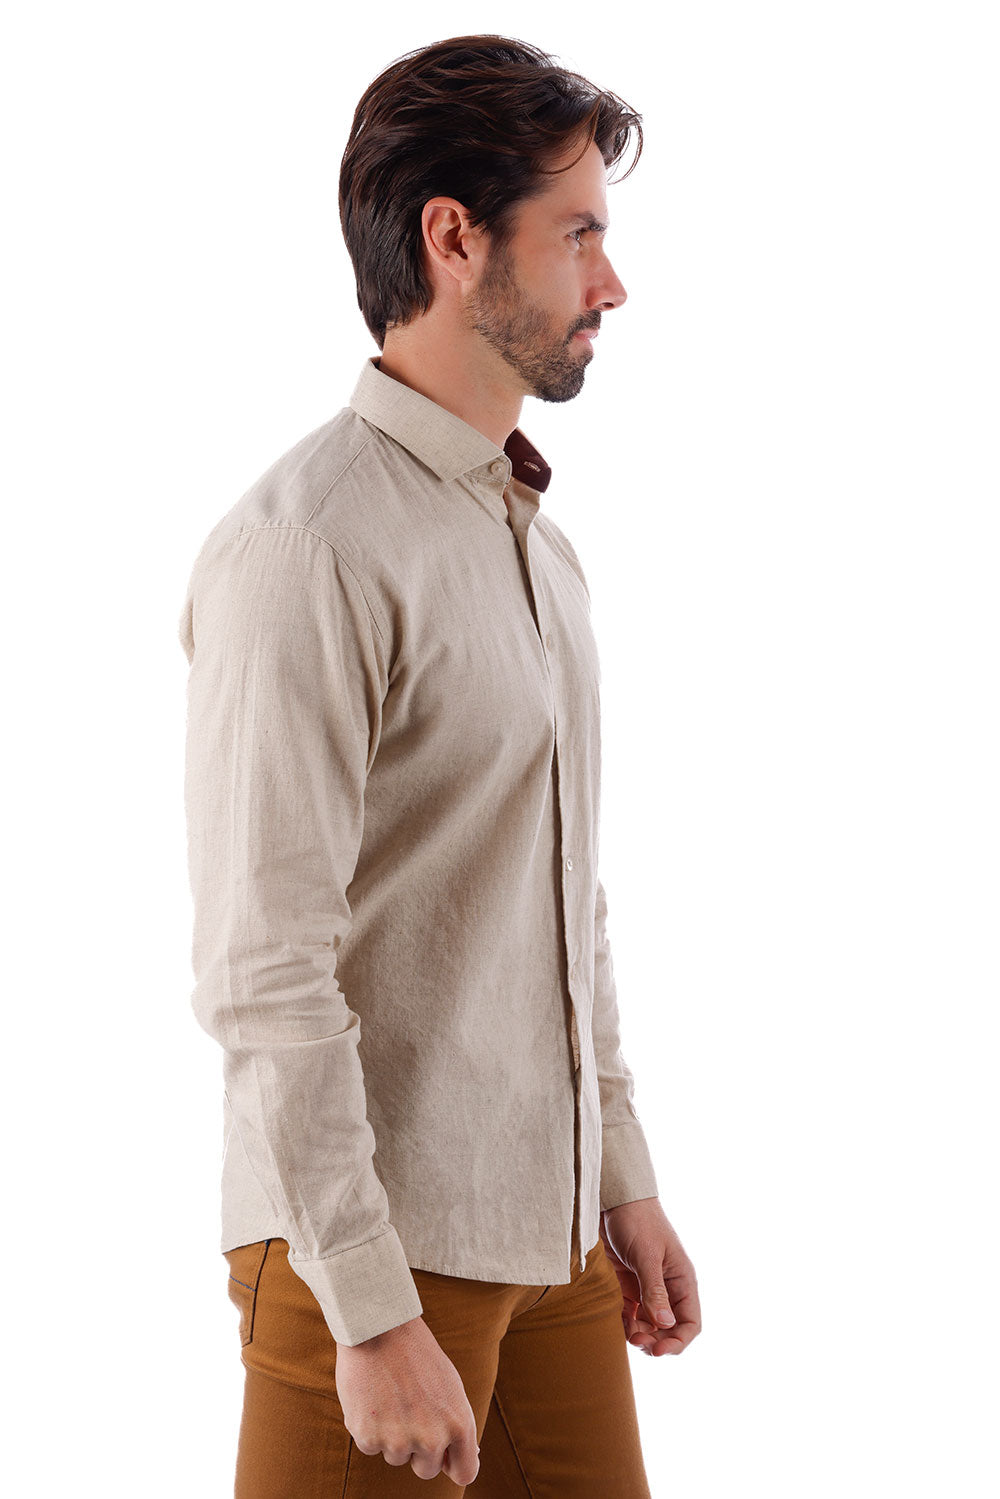 BARABAS Men's Linen Lightweight Button Down Long Sleeve Shirt 4B37 Khaki